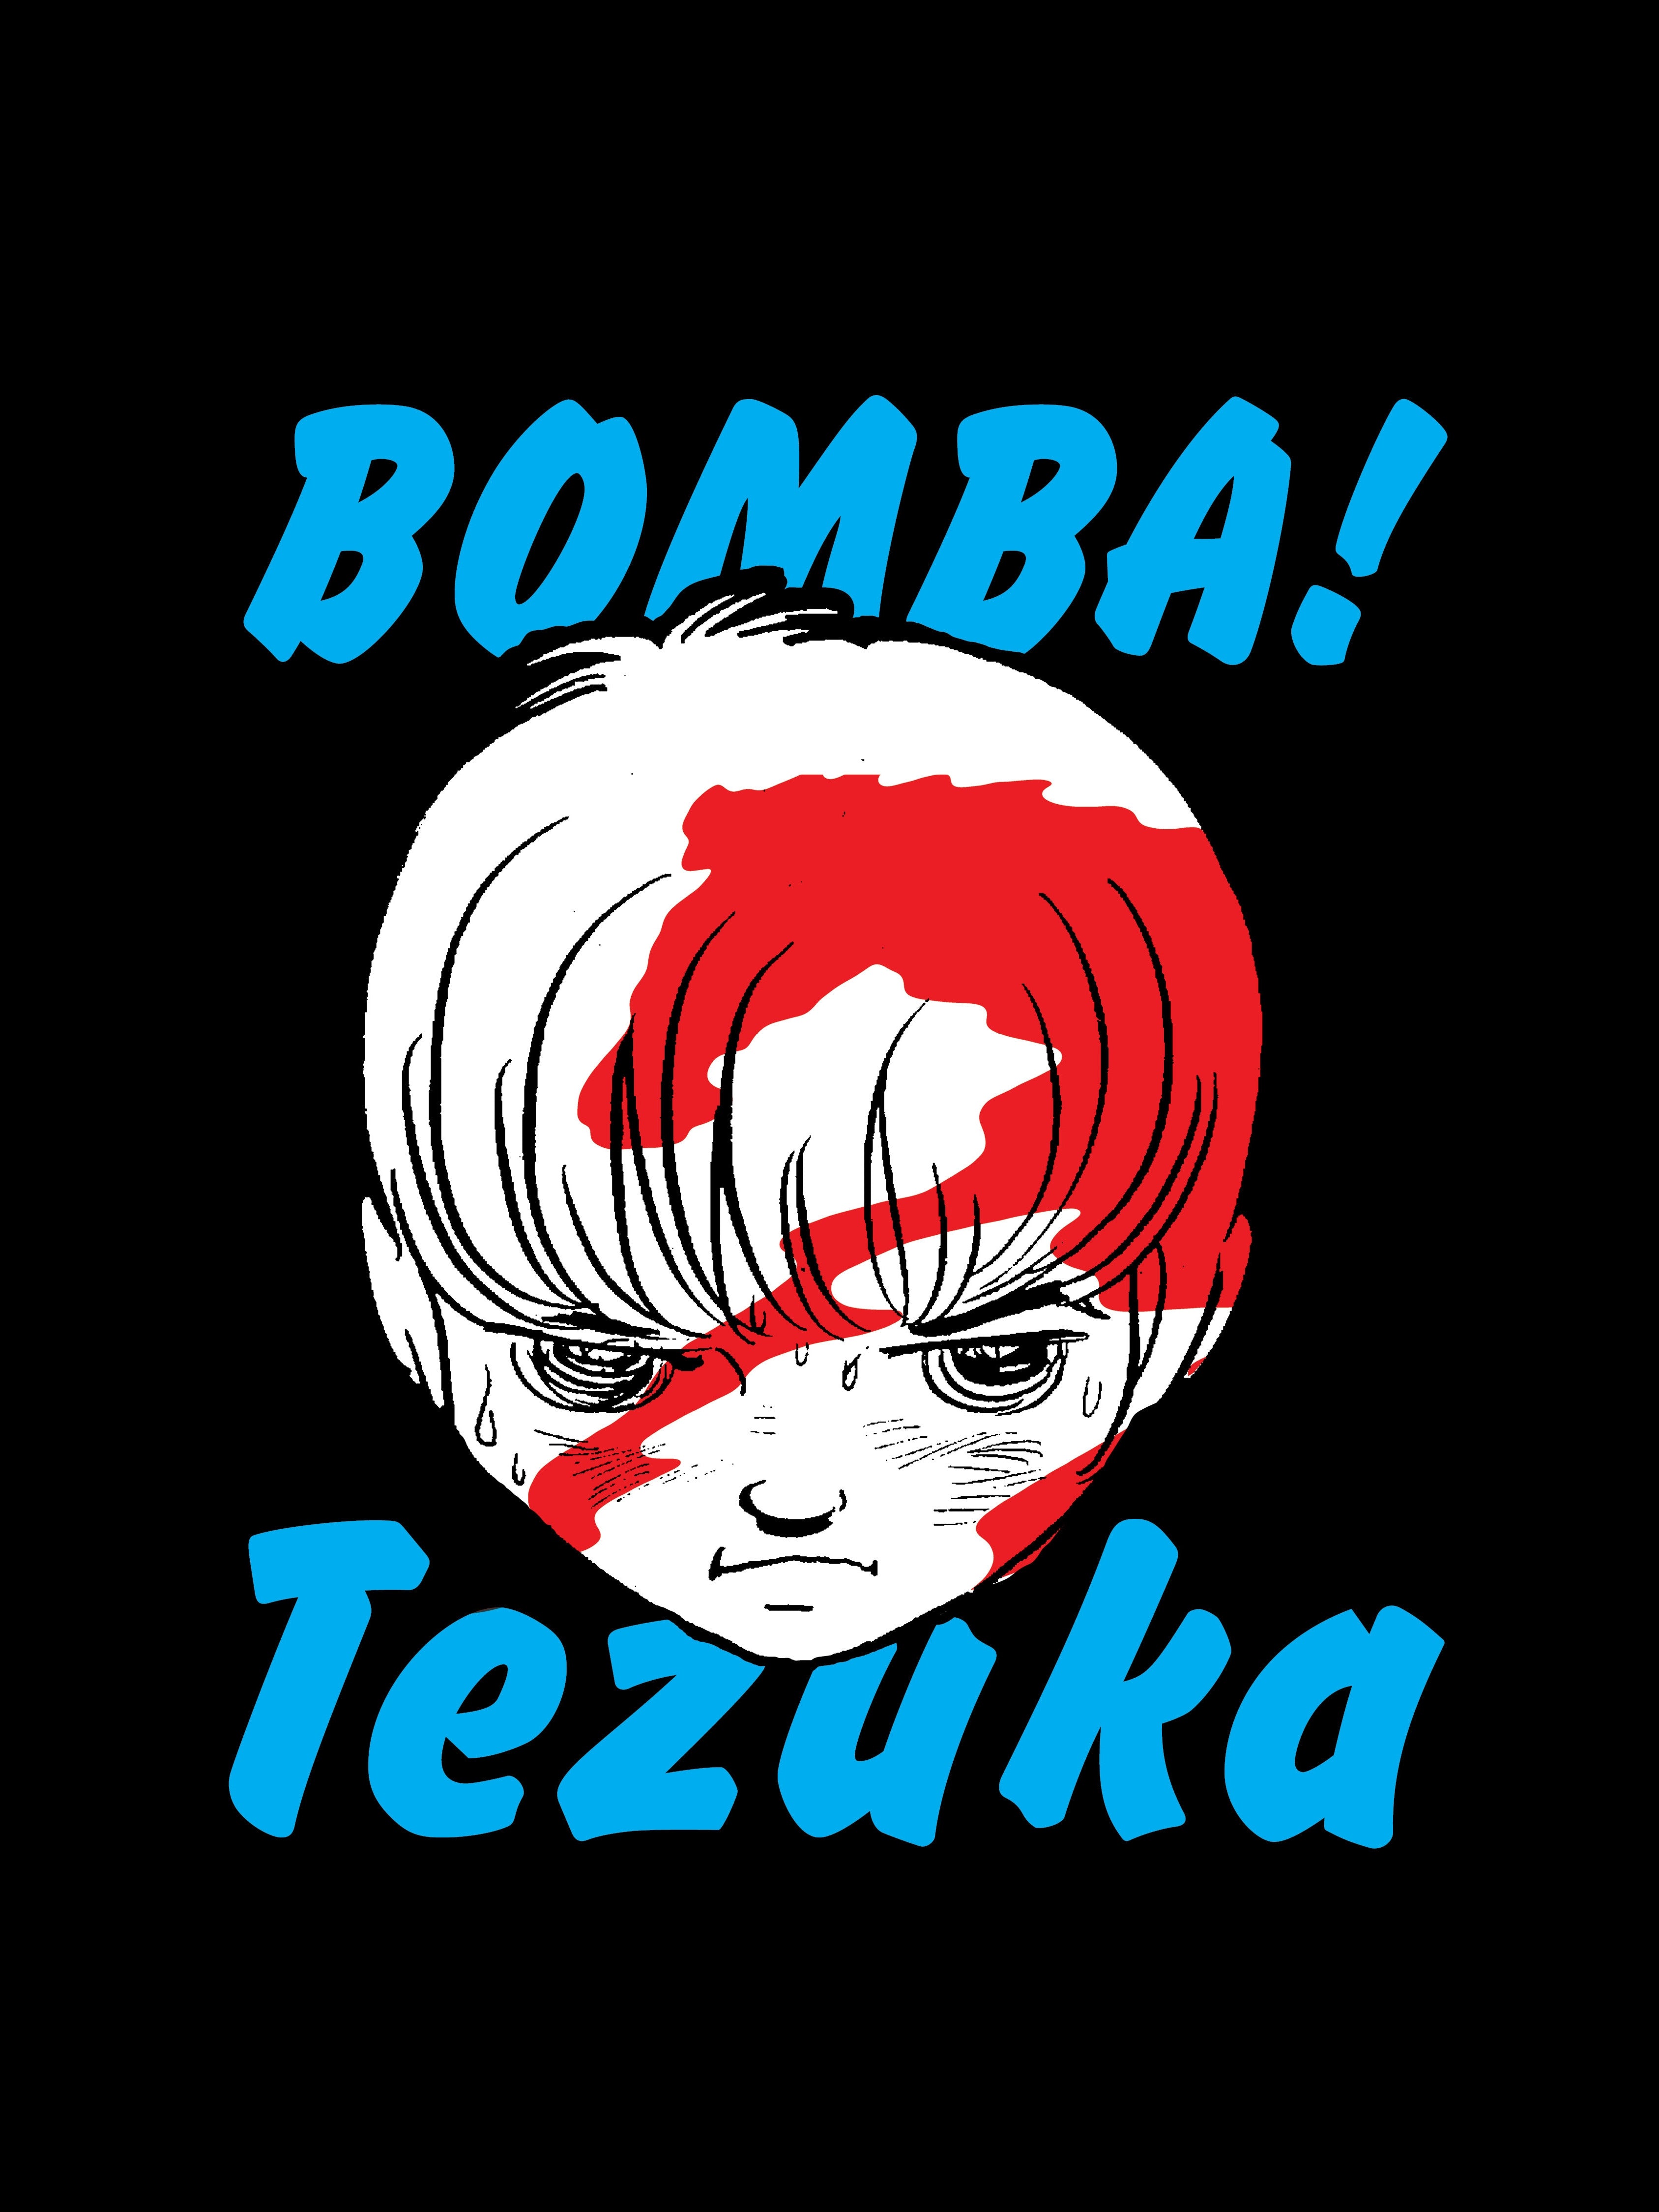 Bomba! - Osamu Tezuka